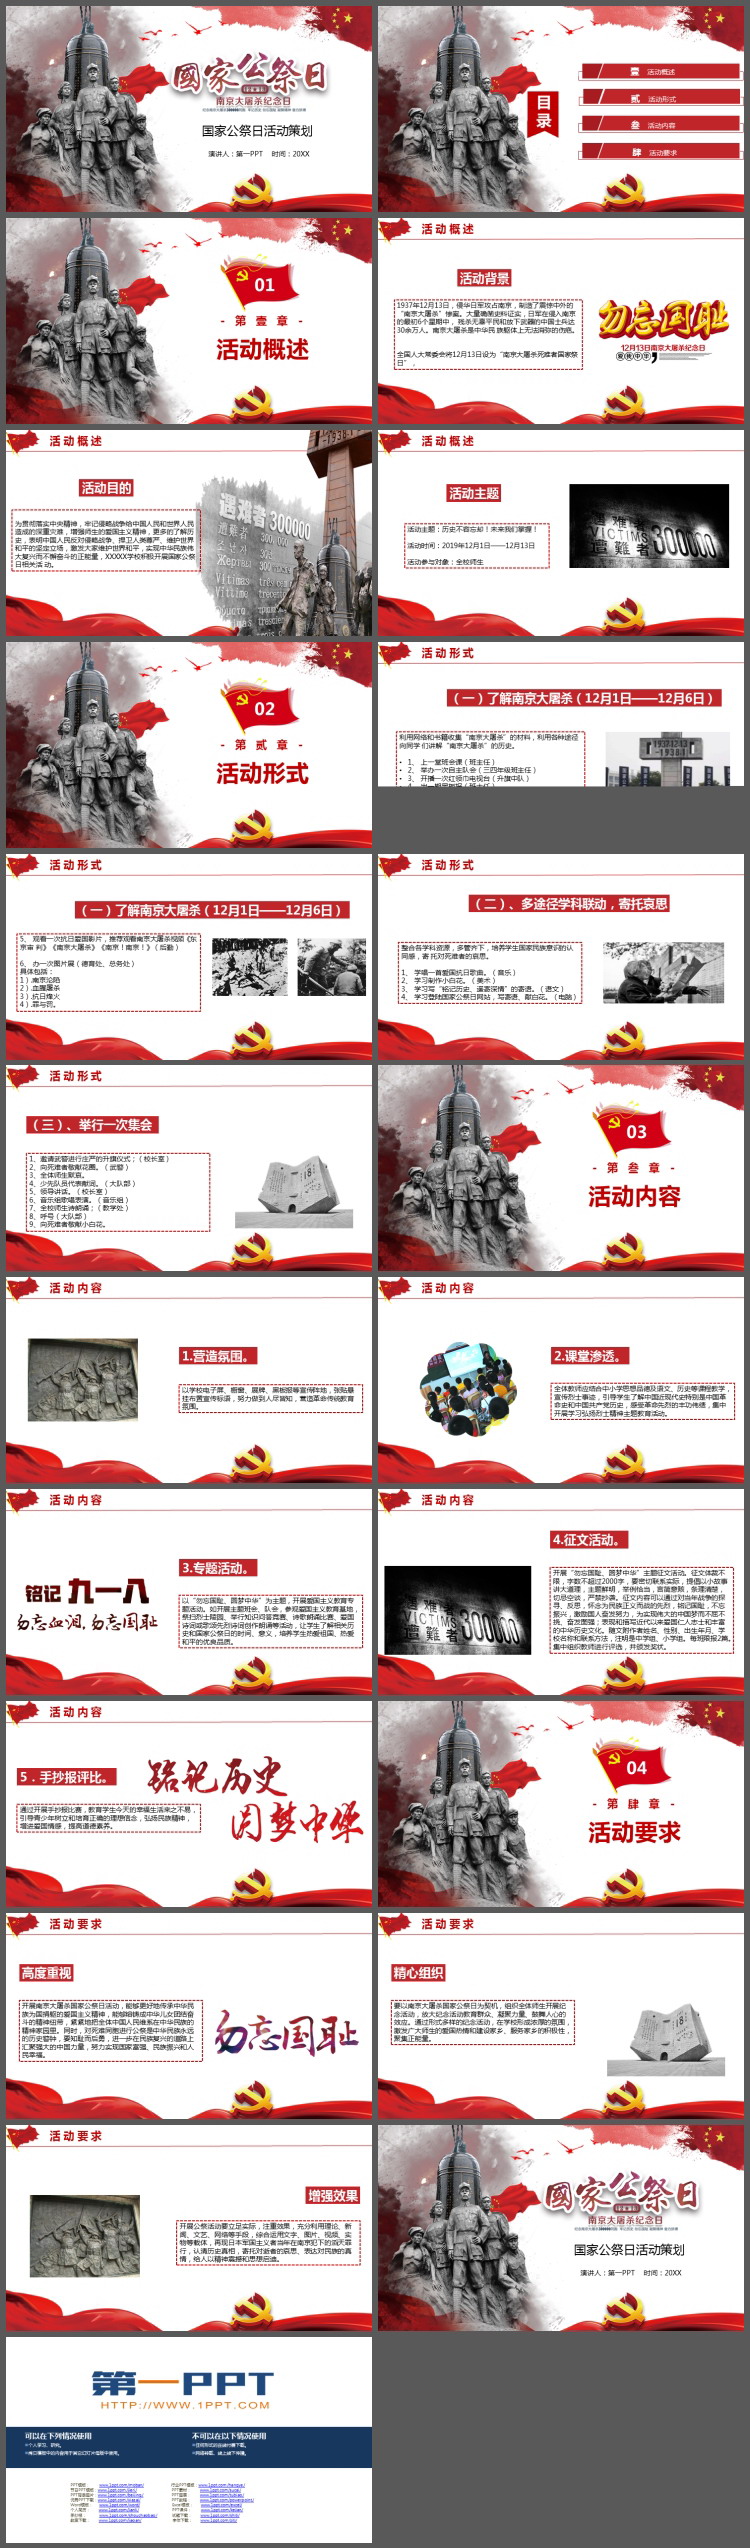 南京大屠杀,国家公祭日主题班会,国家公祭日